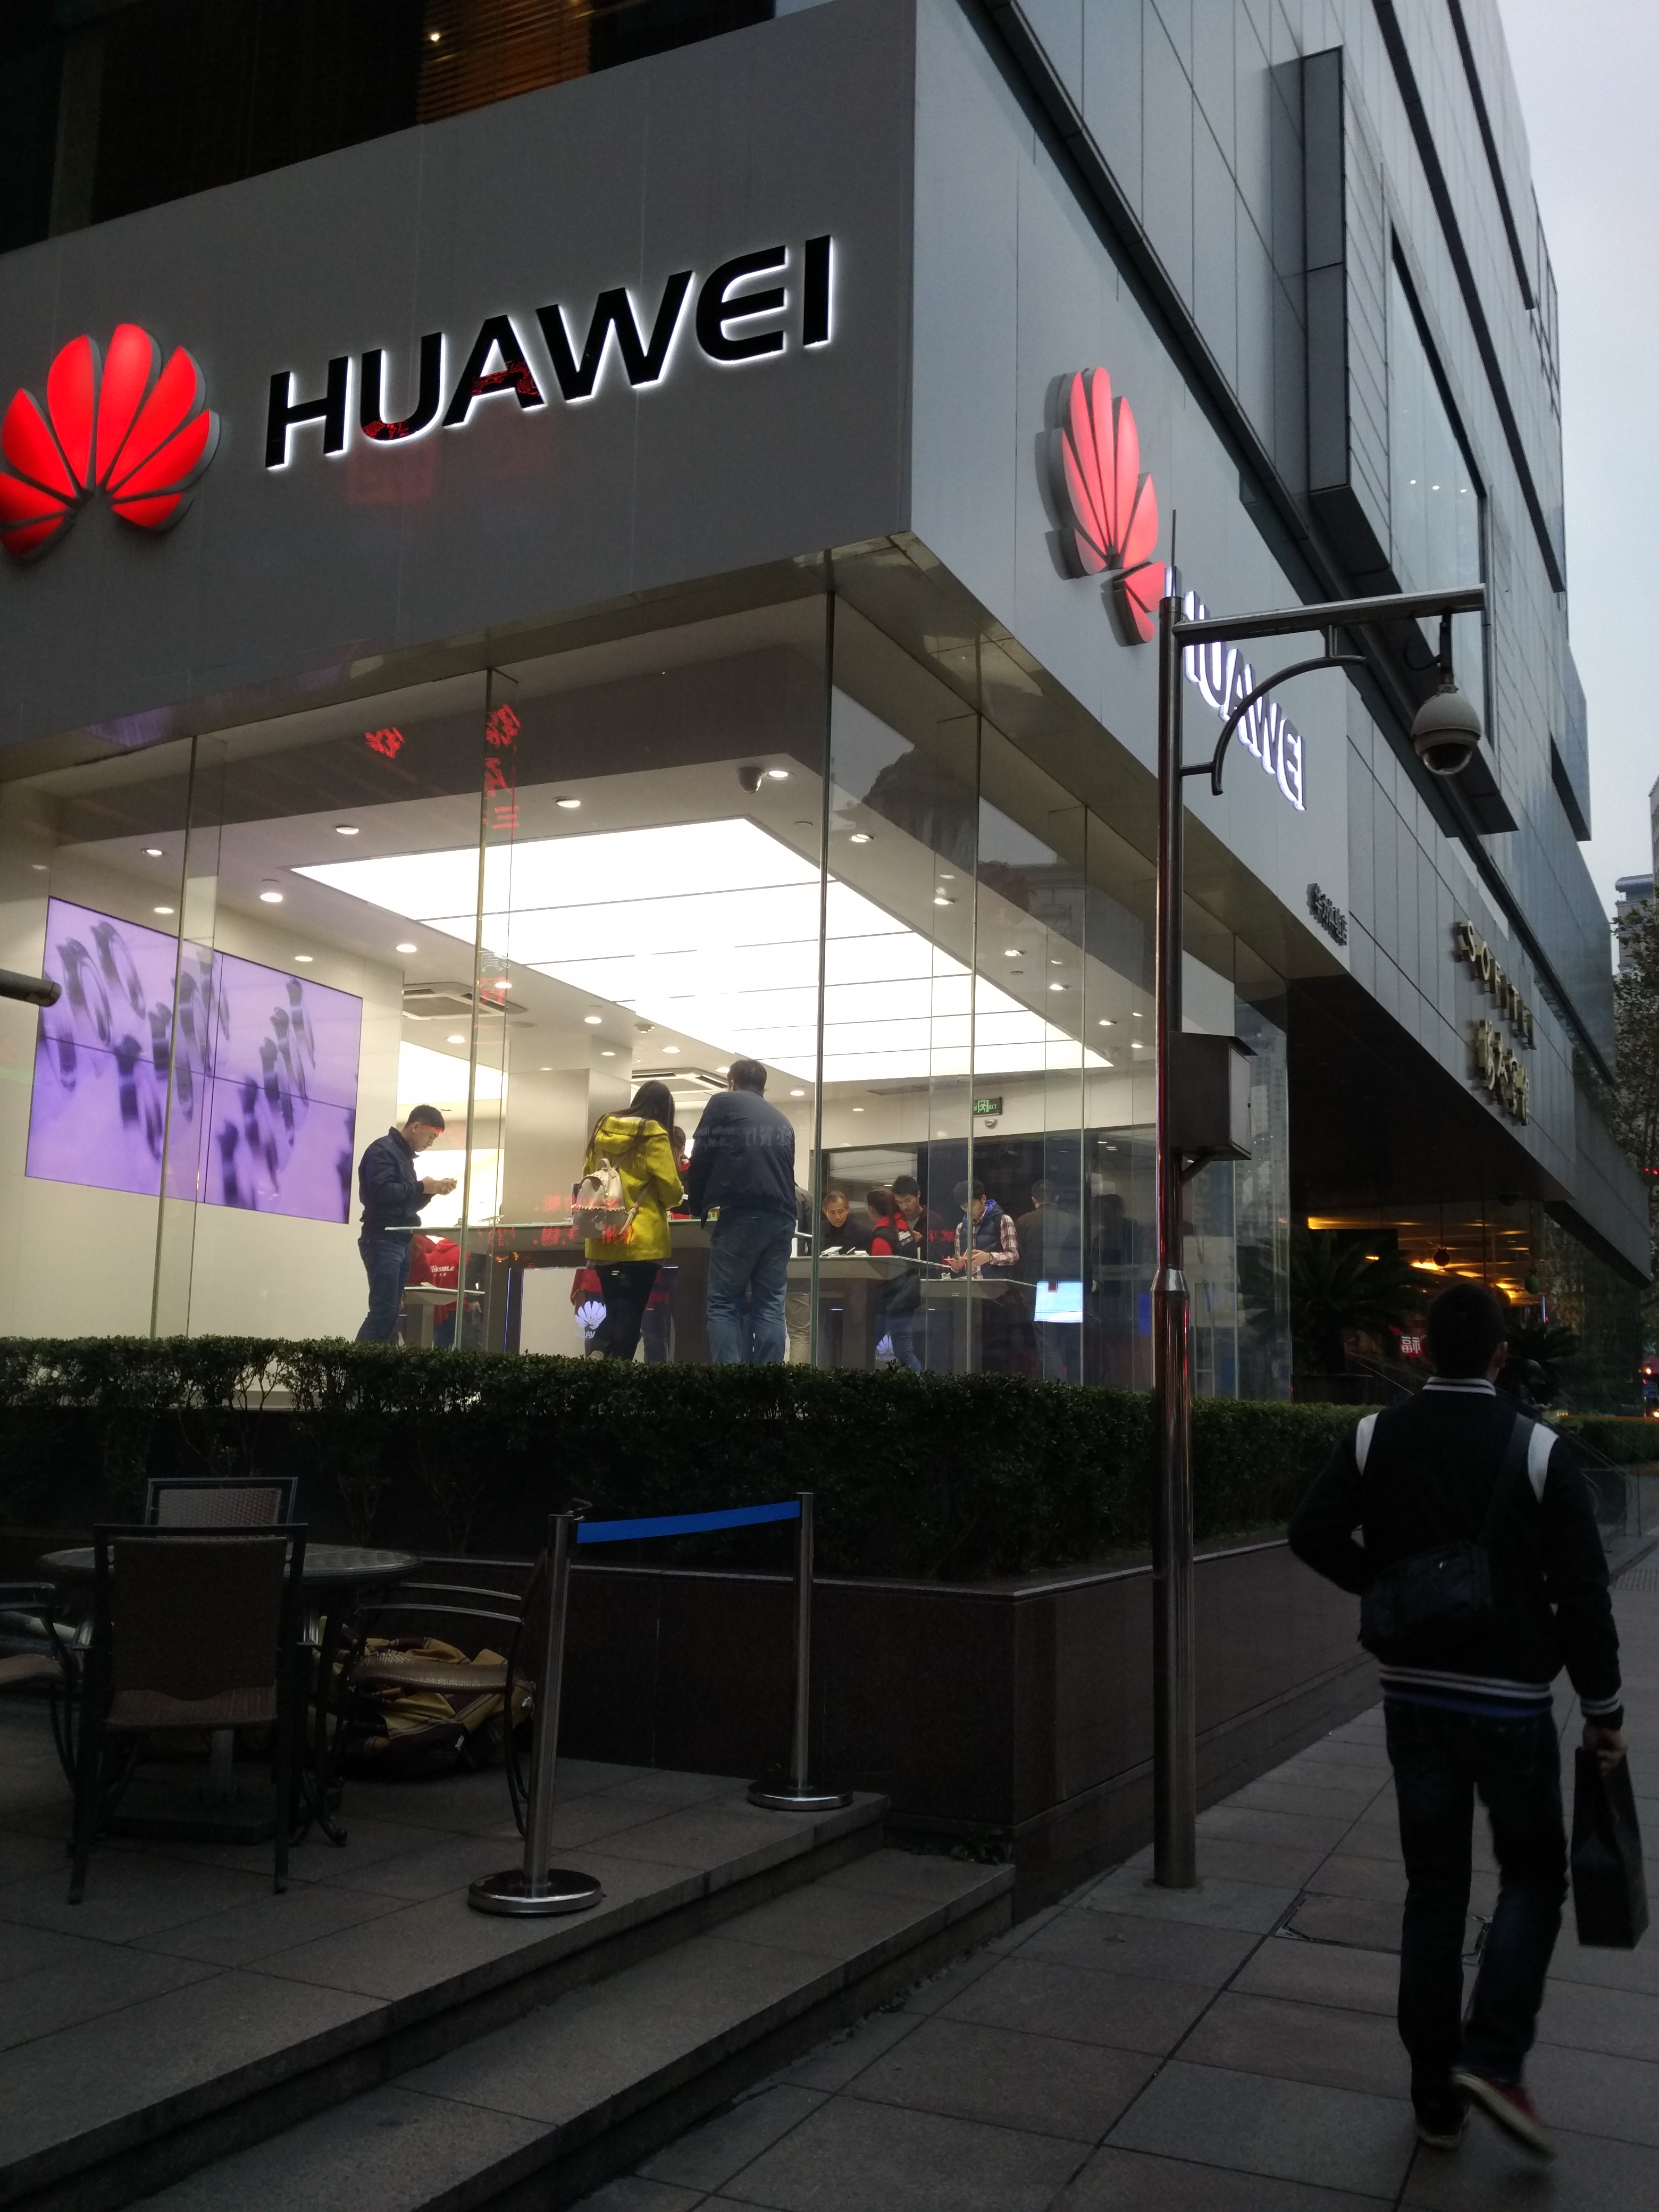 Купить huawei в магазине. Хуавей стор. Huawei магазин. Магазин Huawei в Китае. Huawei Showroom.